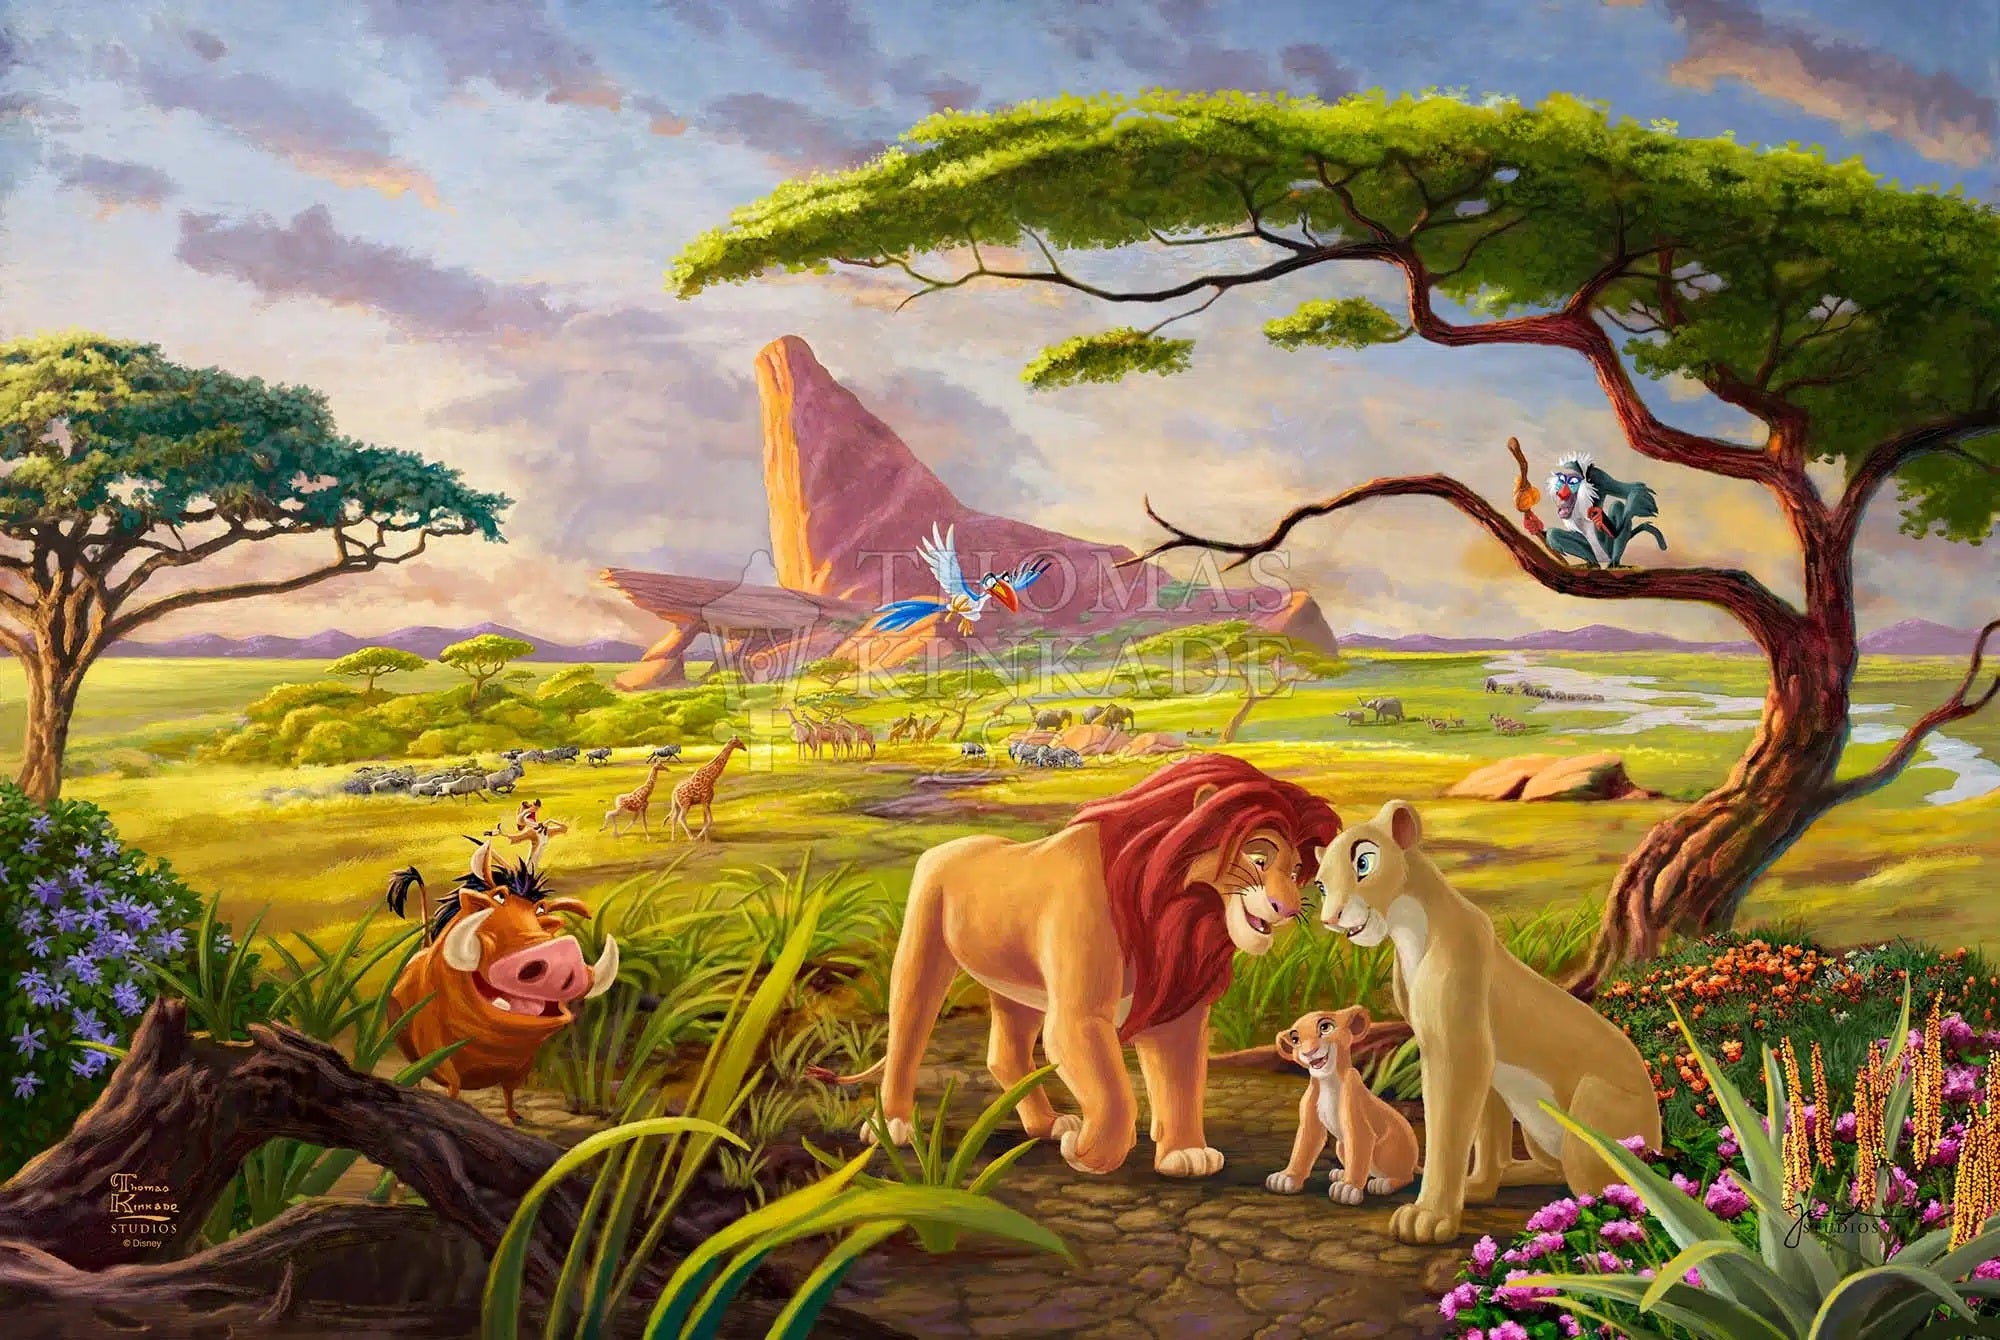 Disney The Lion King – Thomas Kinkade Studios